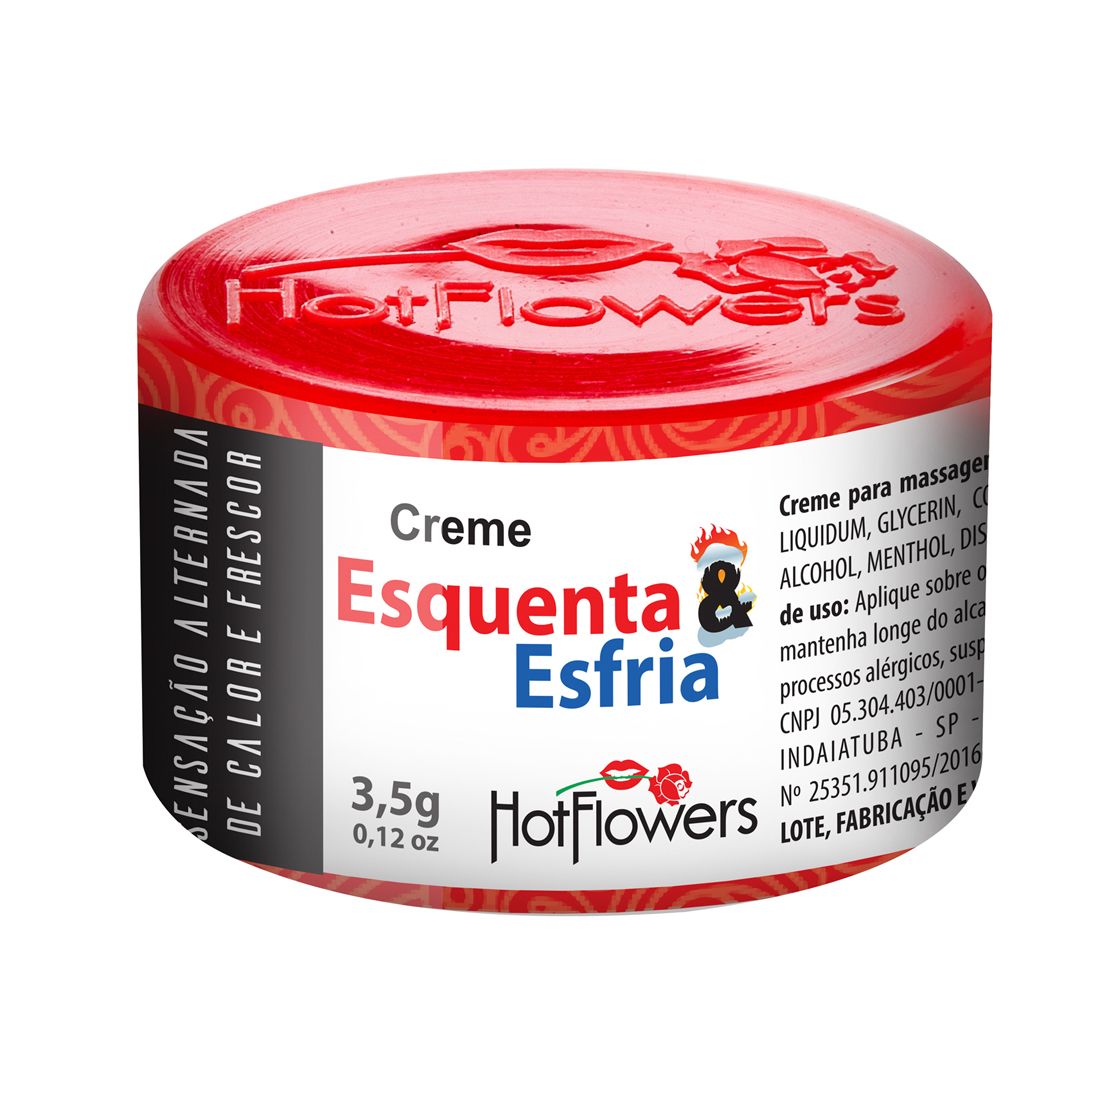 Крем Esquenta&Esfria с охлаждающе-разогревающим эффектом для наружного применения, вызывающий ощущения то холода, то тепла.